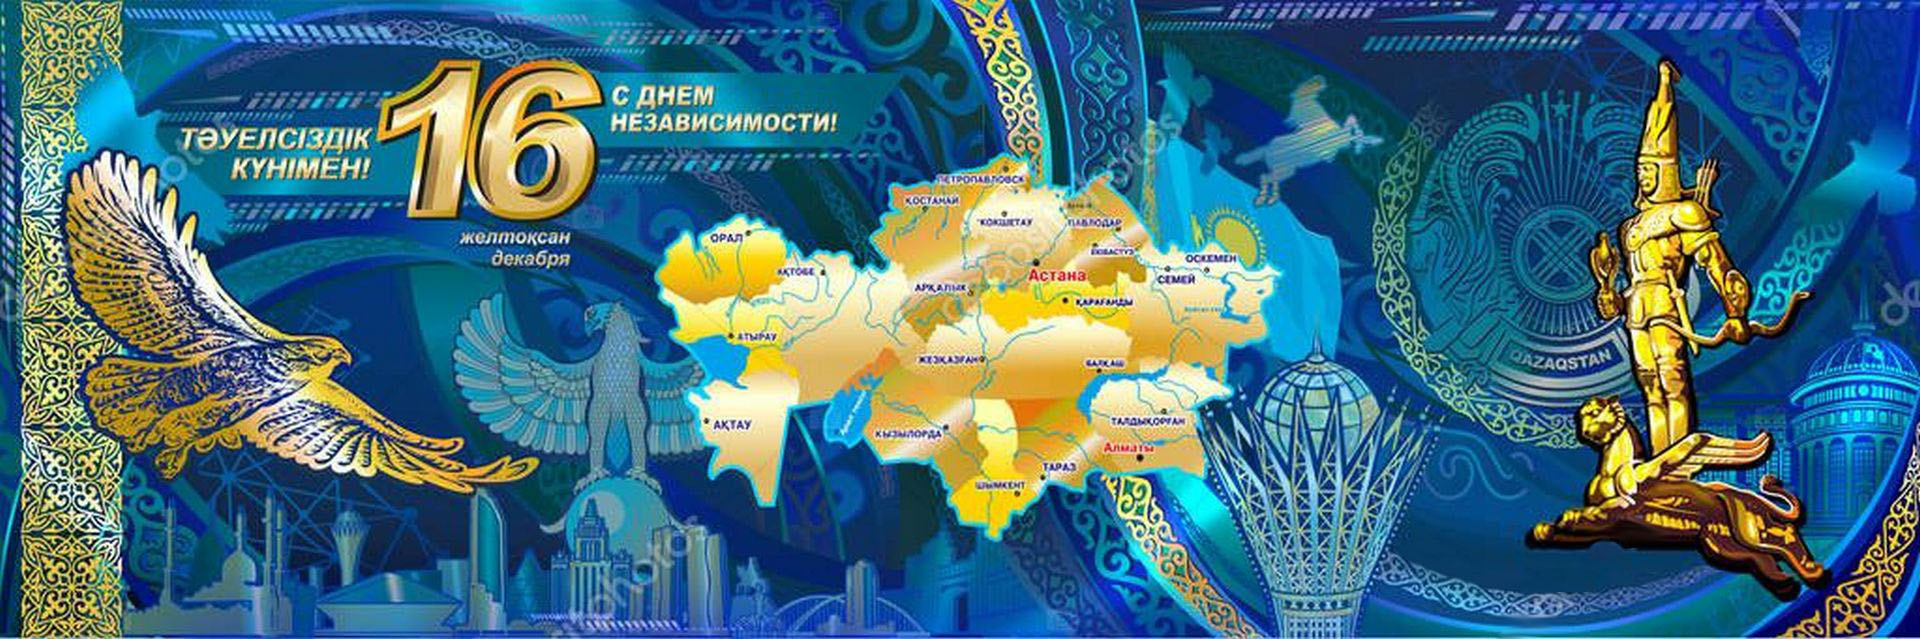 День Республики Казахстан плакат